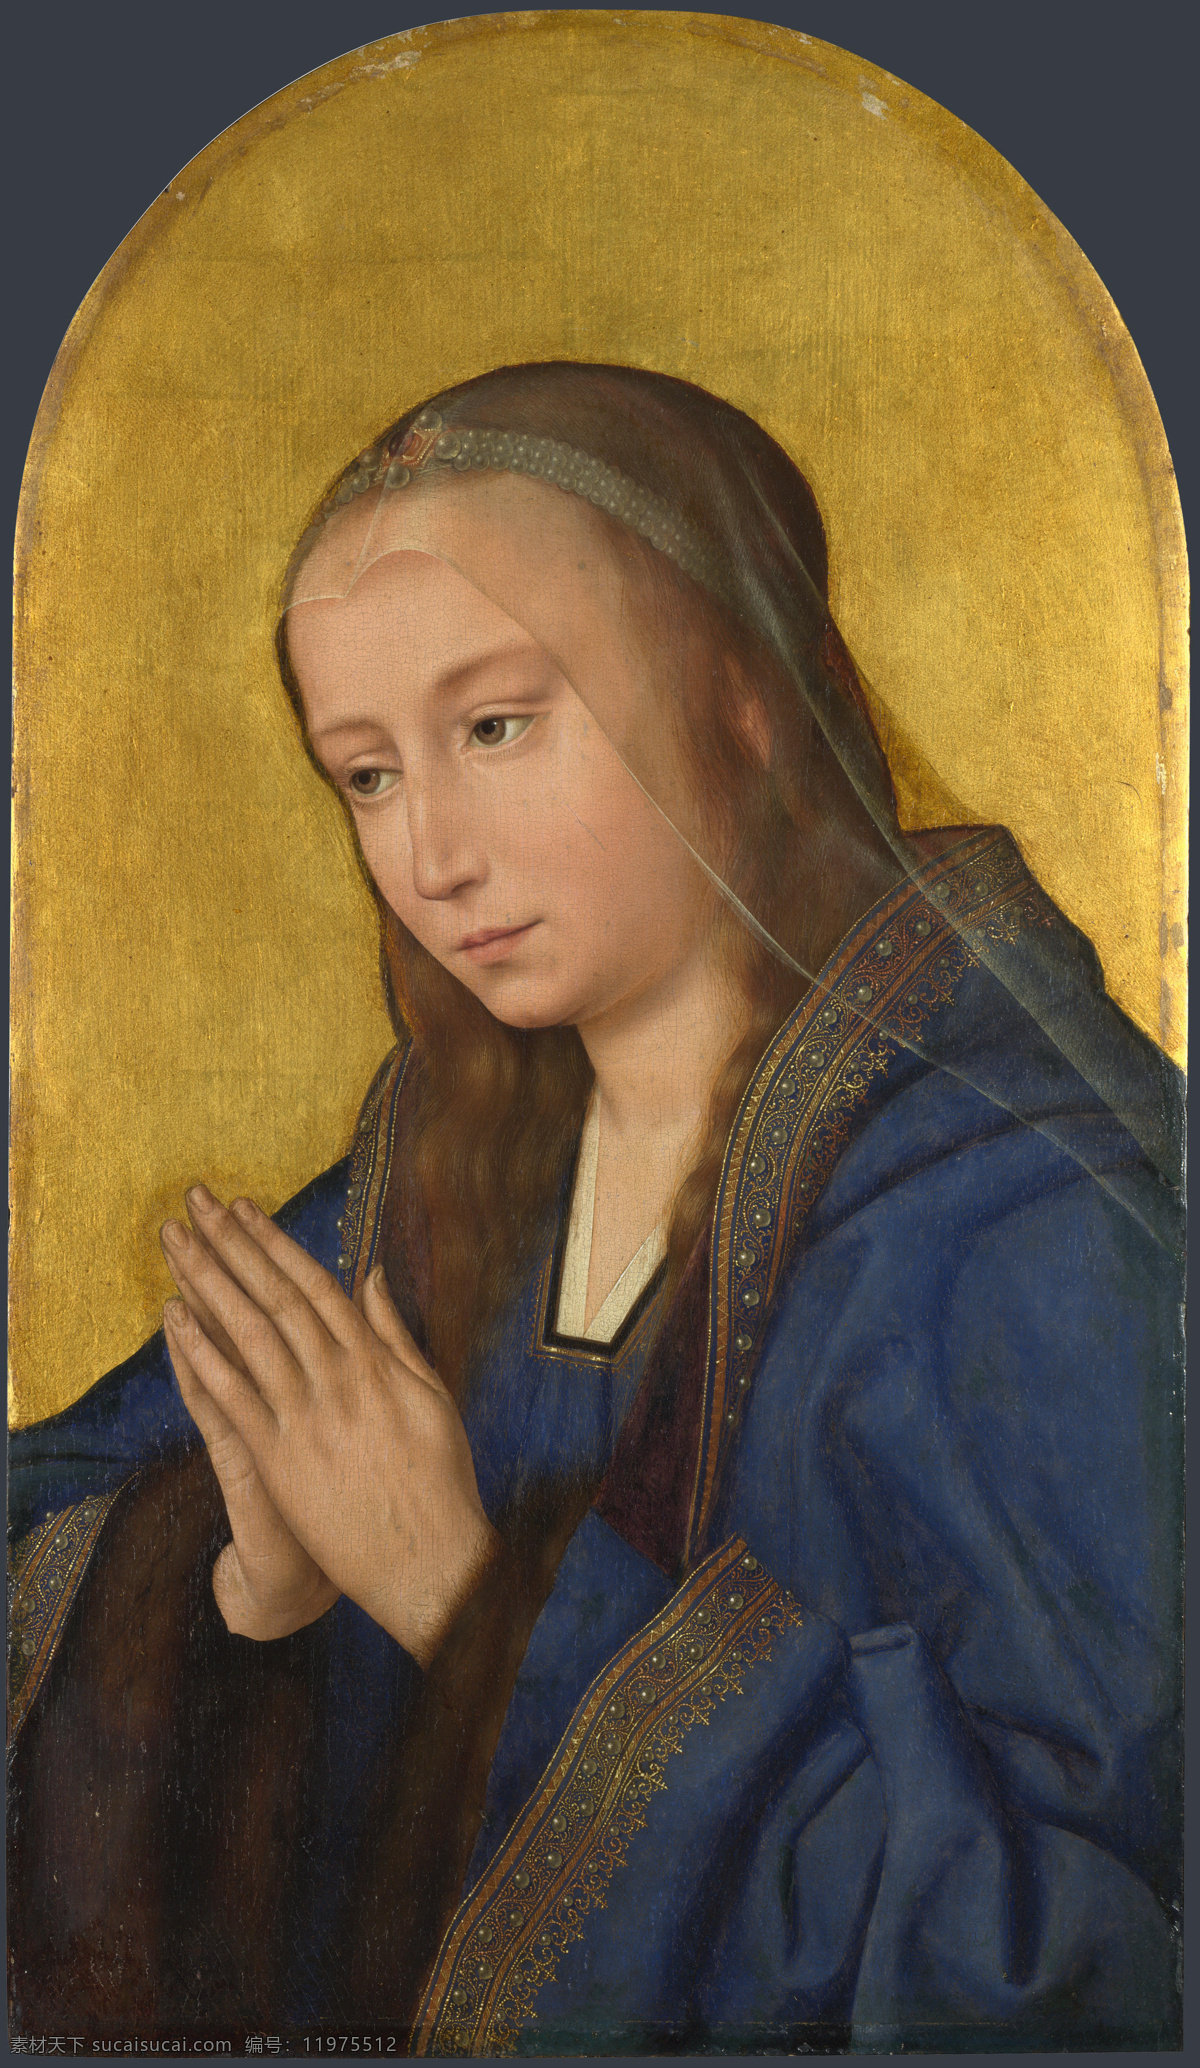 圣母 画像 油画 油画写生 人物油画 人物写生 人物肖像画 绘画艺术 装饰画 书画文字 文化艺术